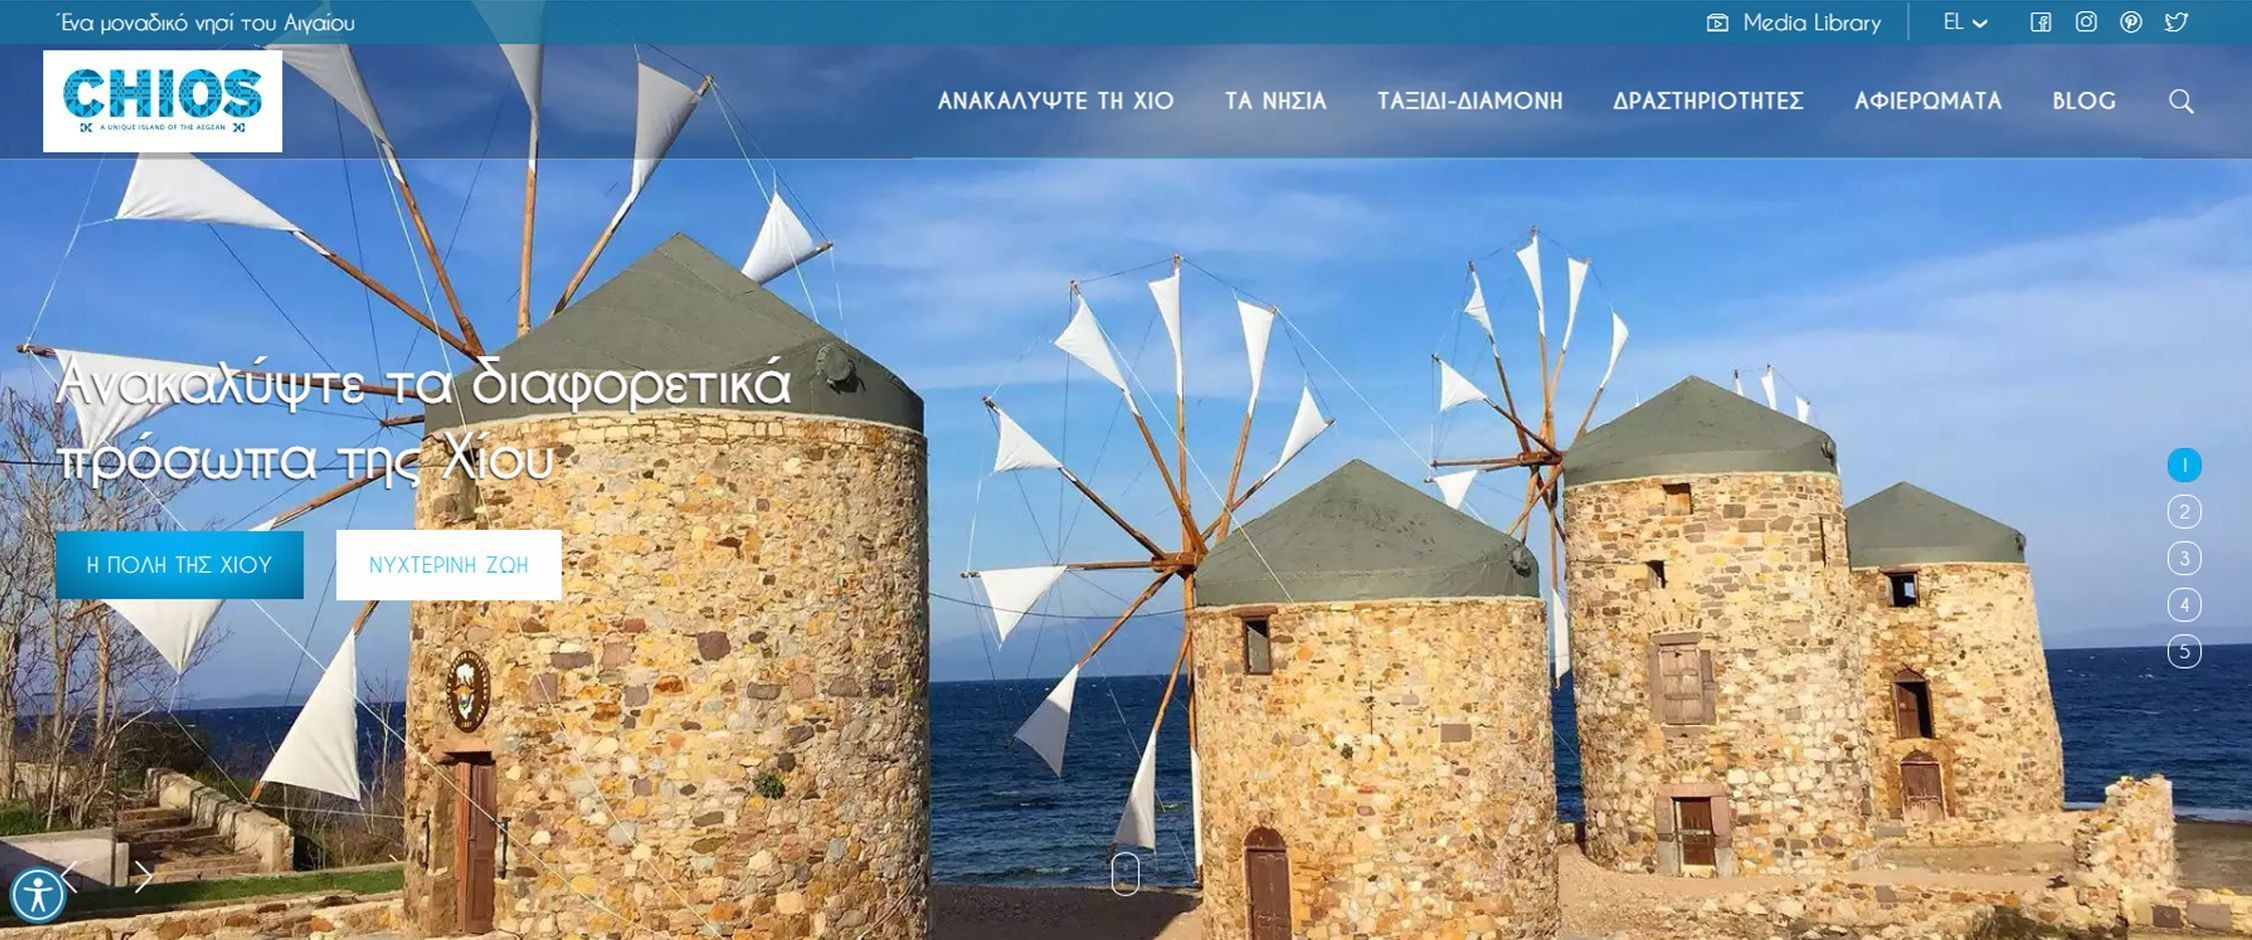 Επίσημη πύλη τουριστικής προβολής της Περιφερείας Β. Αιγαίου για τον νομό της Χίου